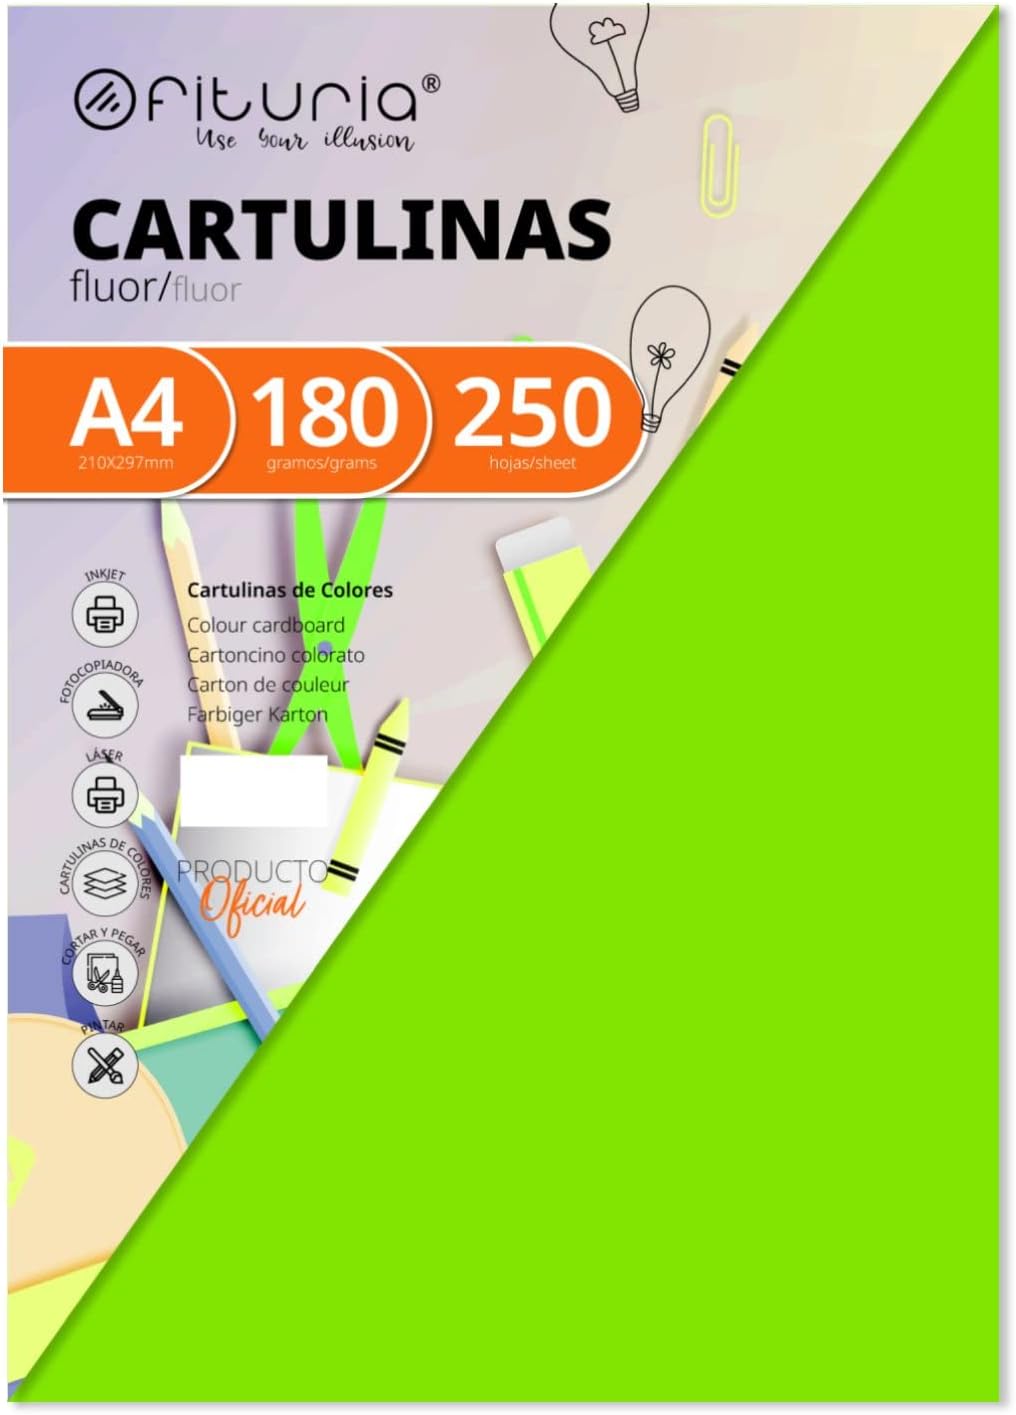 CARTULINAS BLANCAS A4 X8 - 180 GRMS